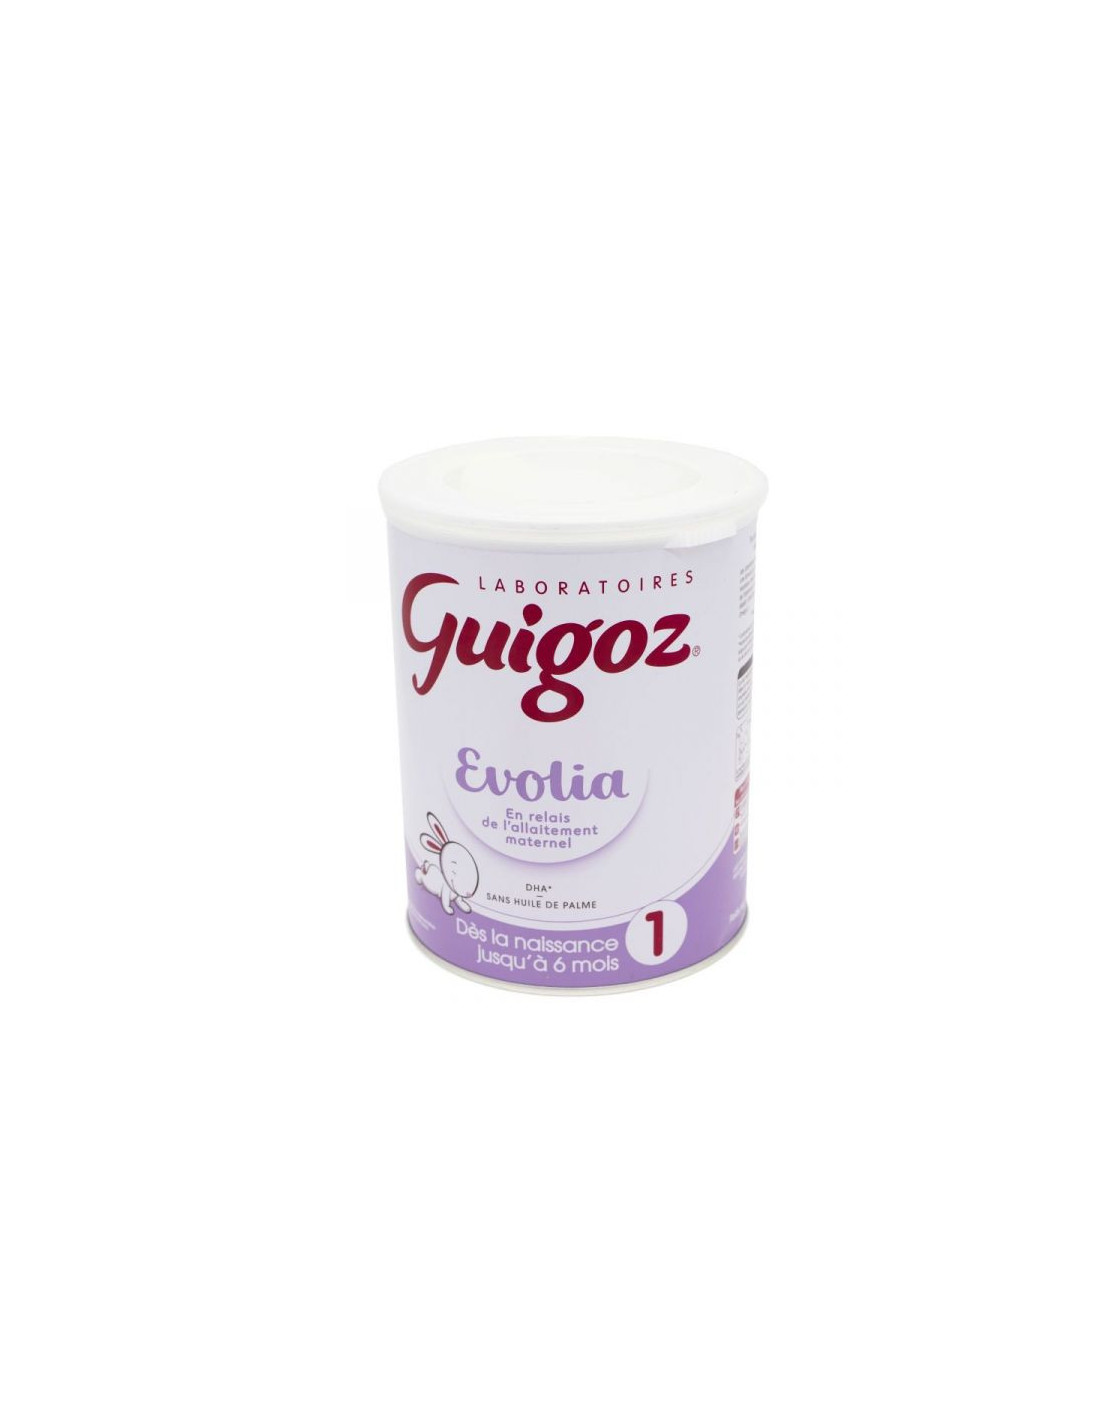 Guigoz Evolia Relais lait 1er âge - 800 g